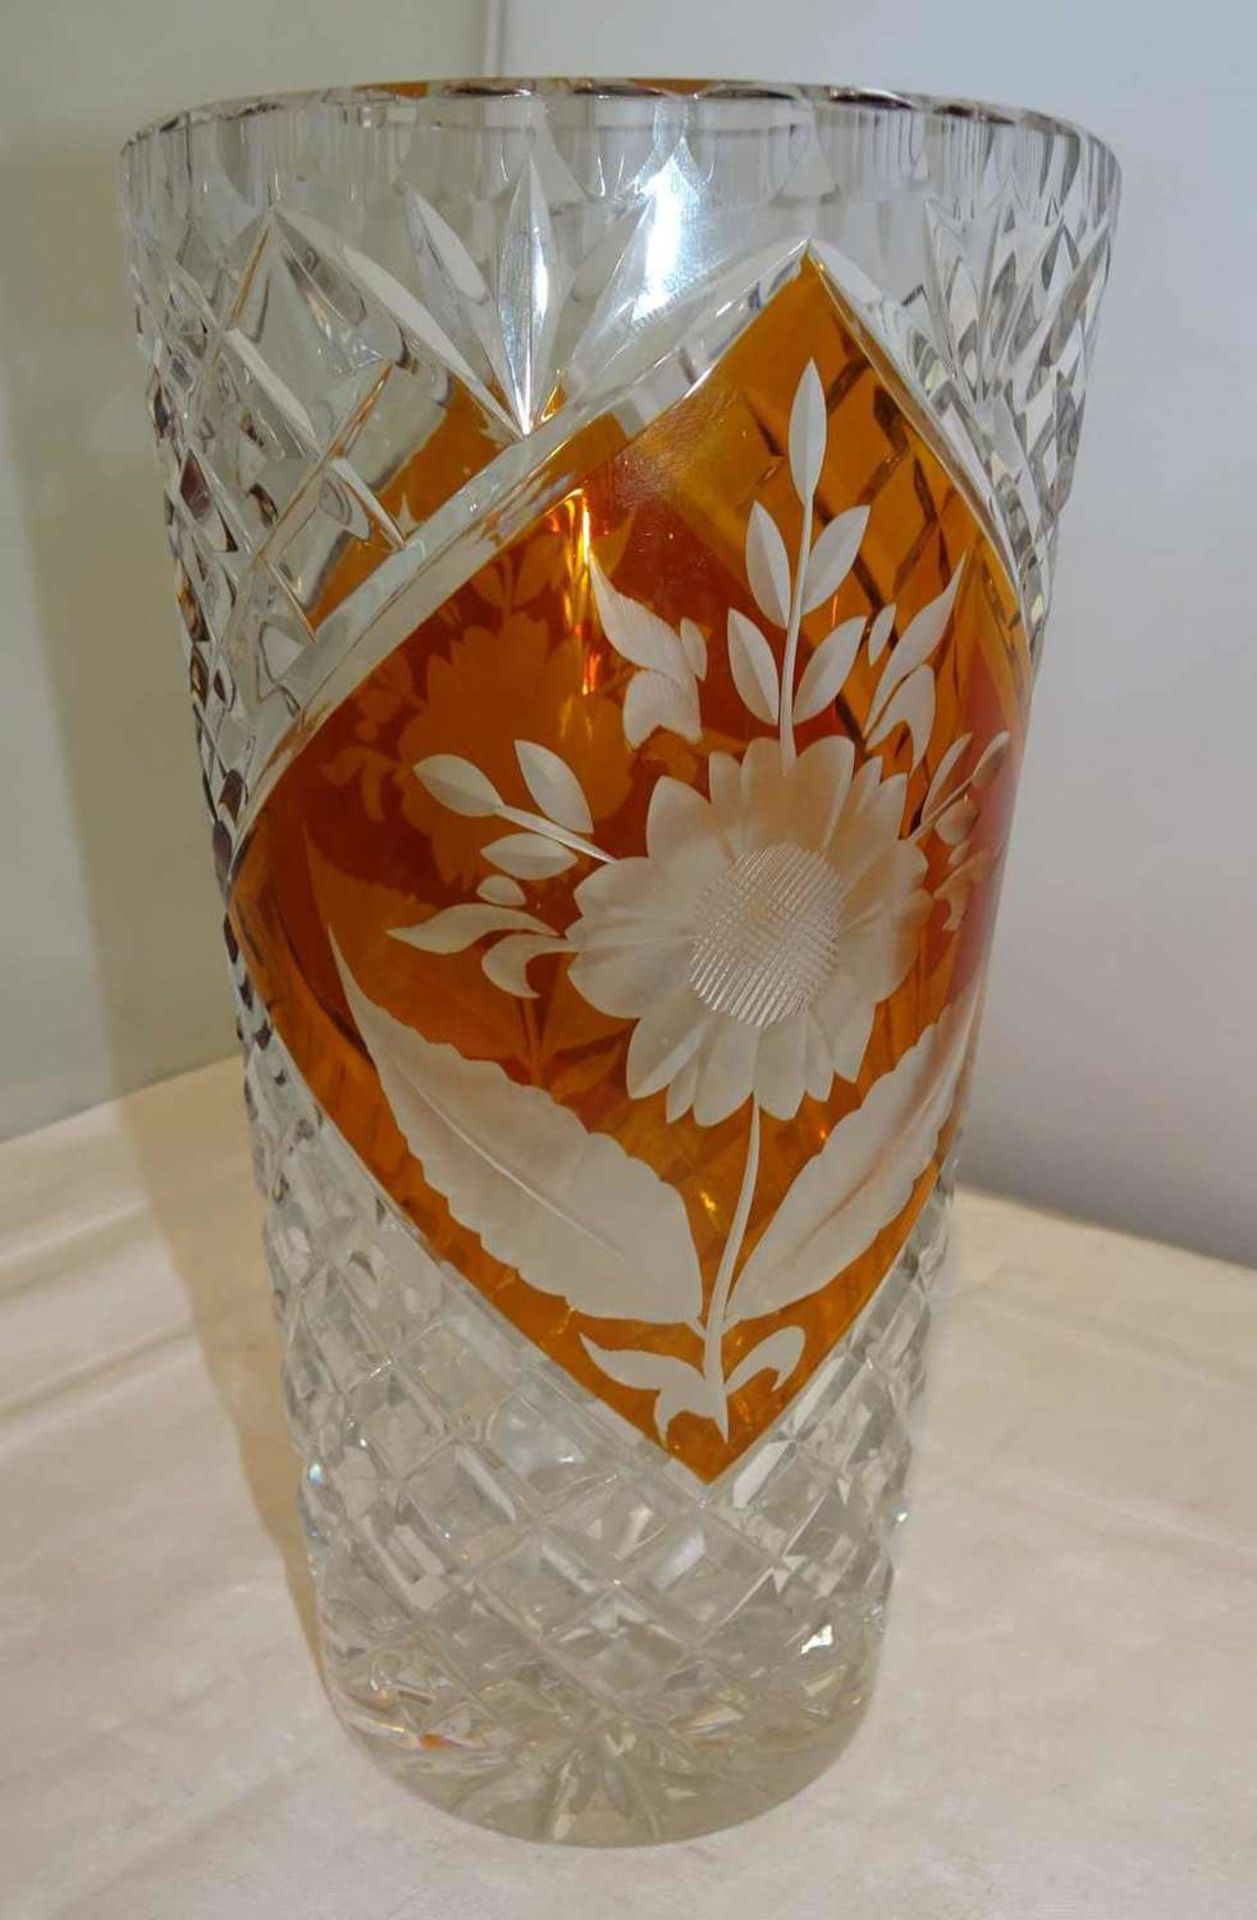 Böhmische Kristallvase mit schönem Schliff, orange überfangen. Guter Zustand. Höhe ca. 20 cmBohemian